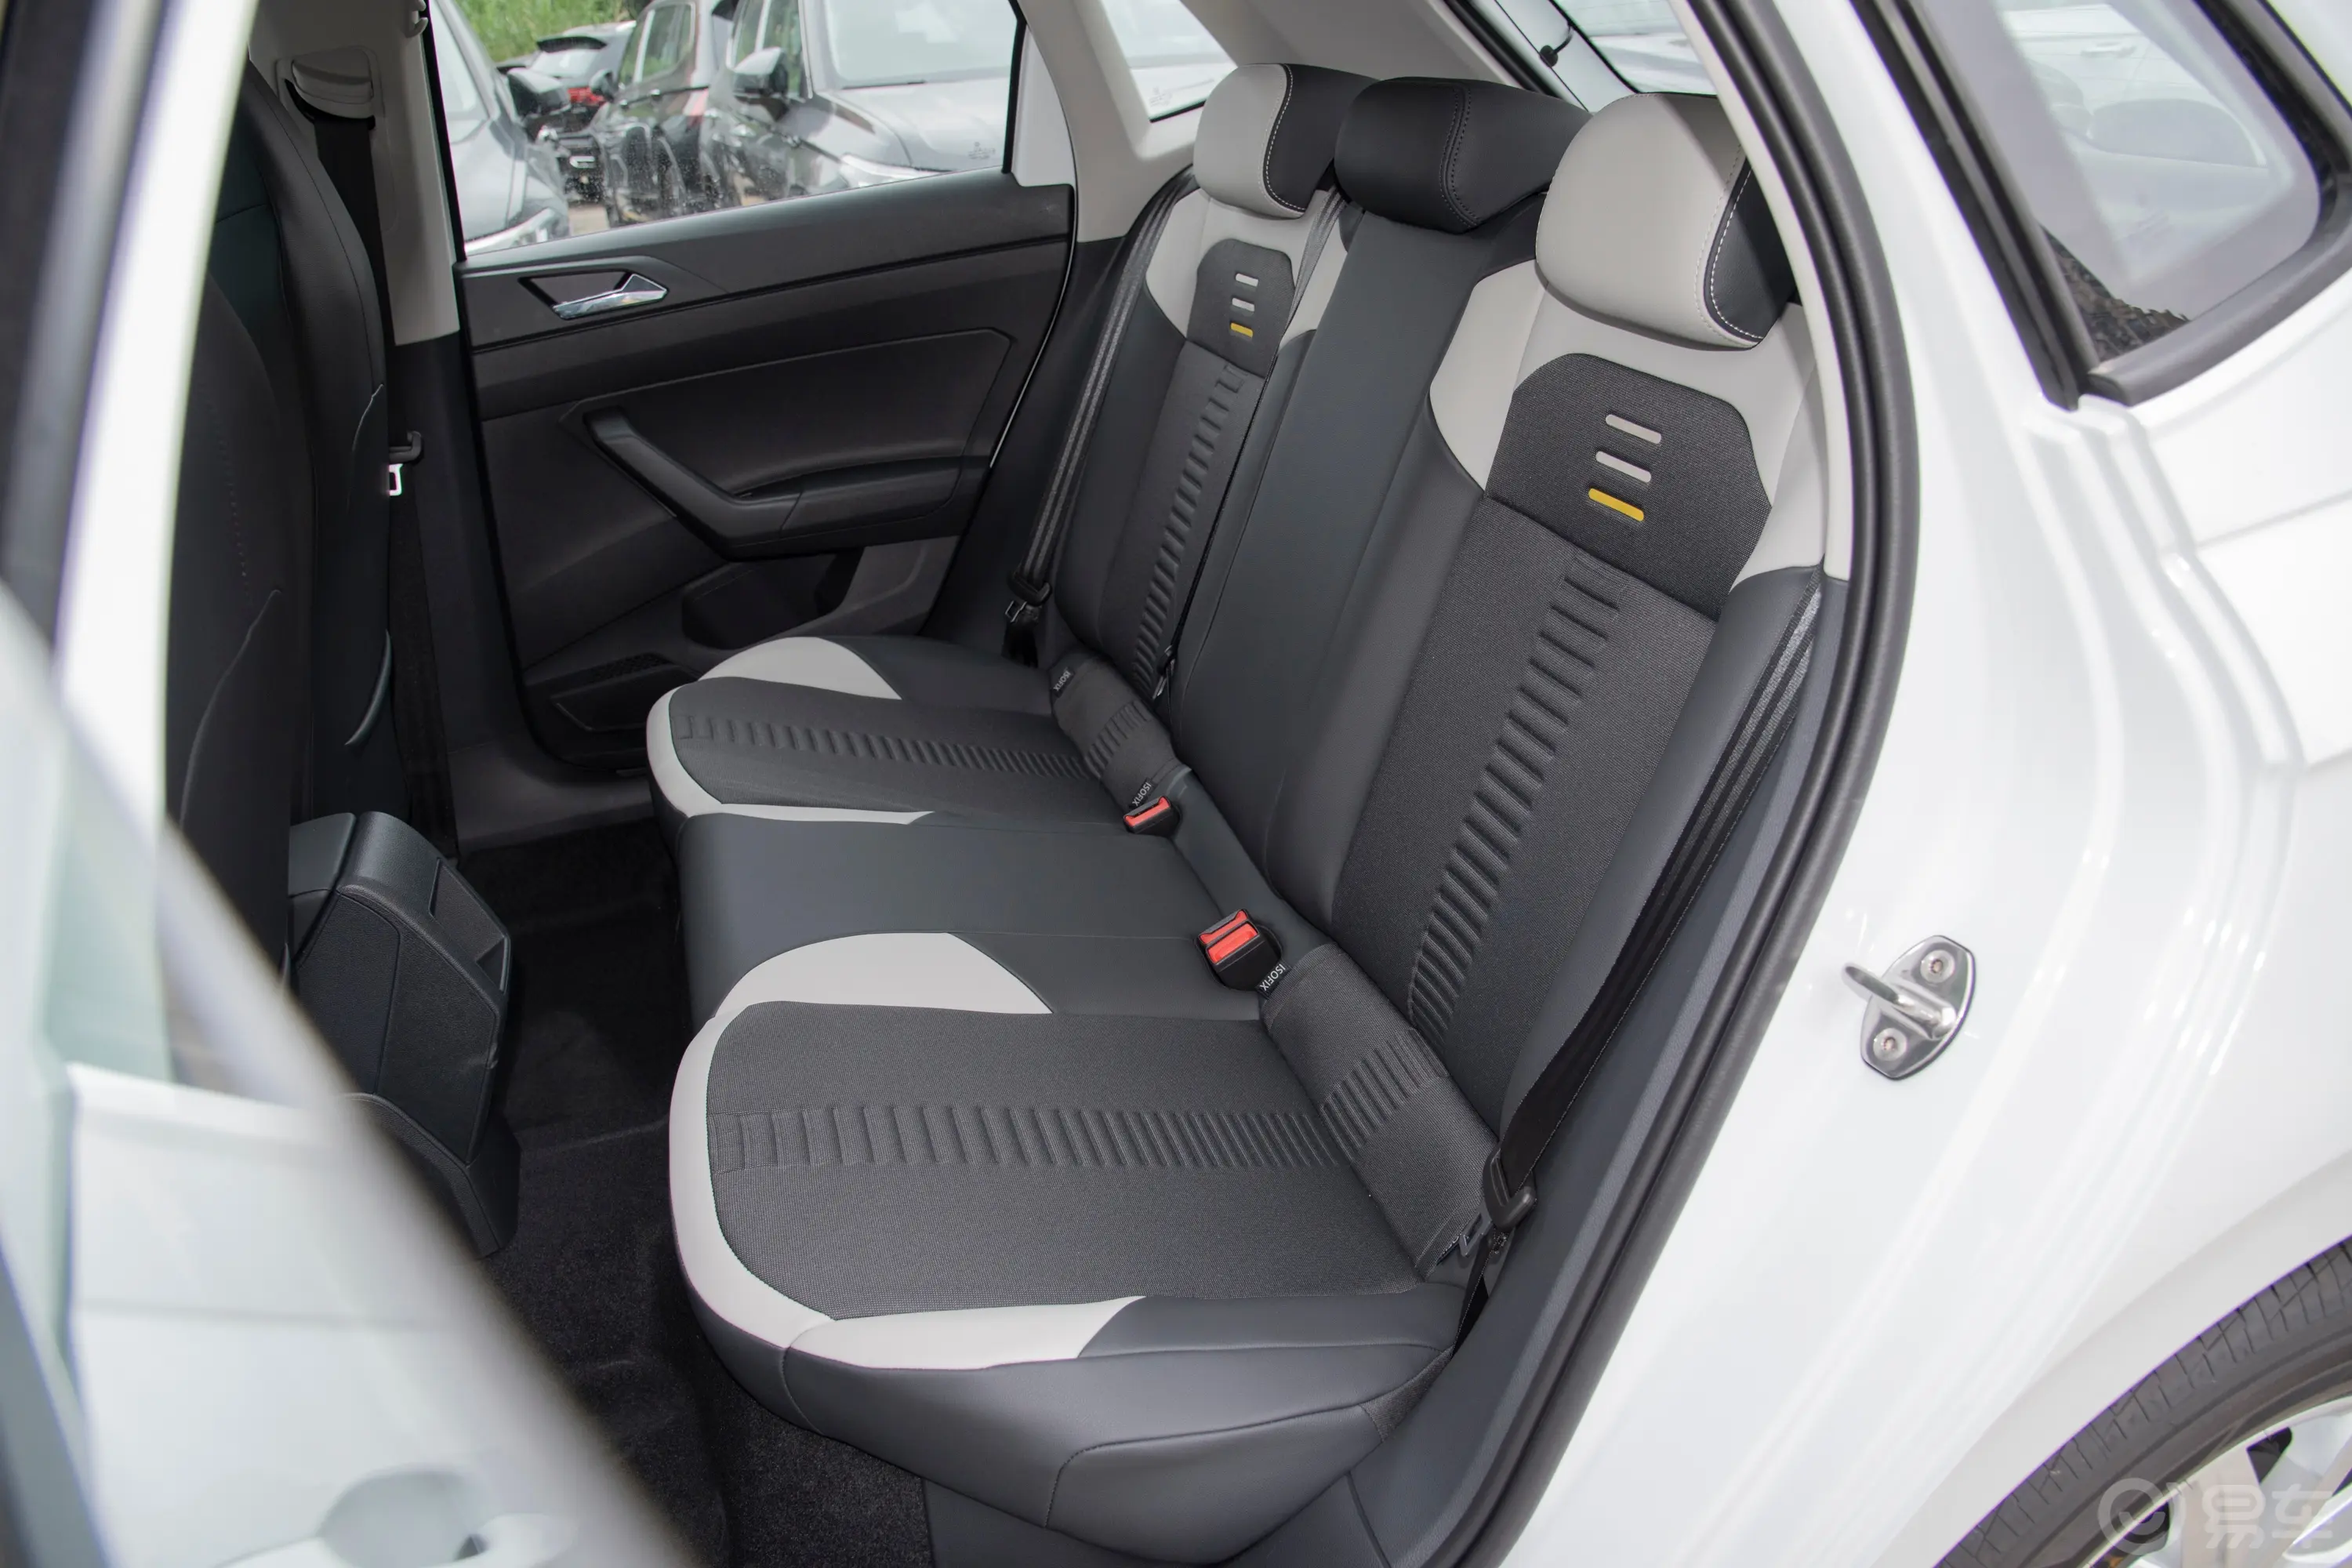 PoloPlus 1.5L 自动炫彩科技版驾驶员侧后车门